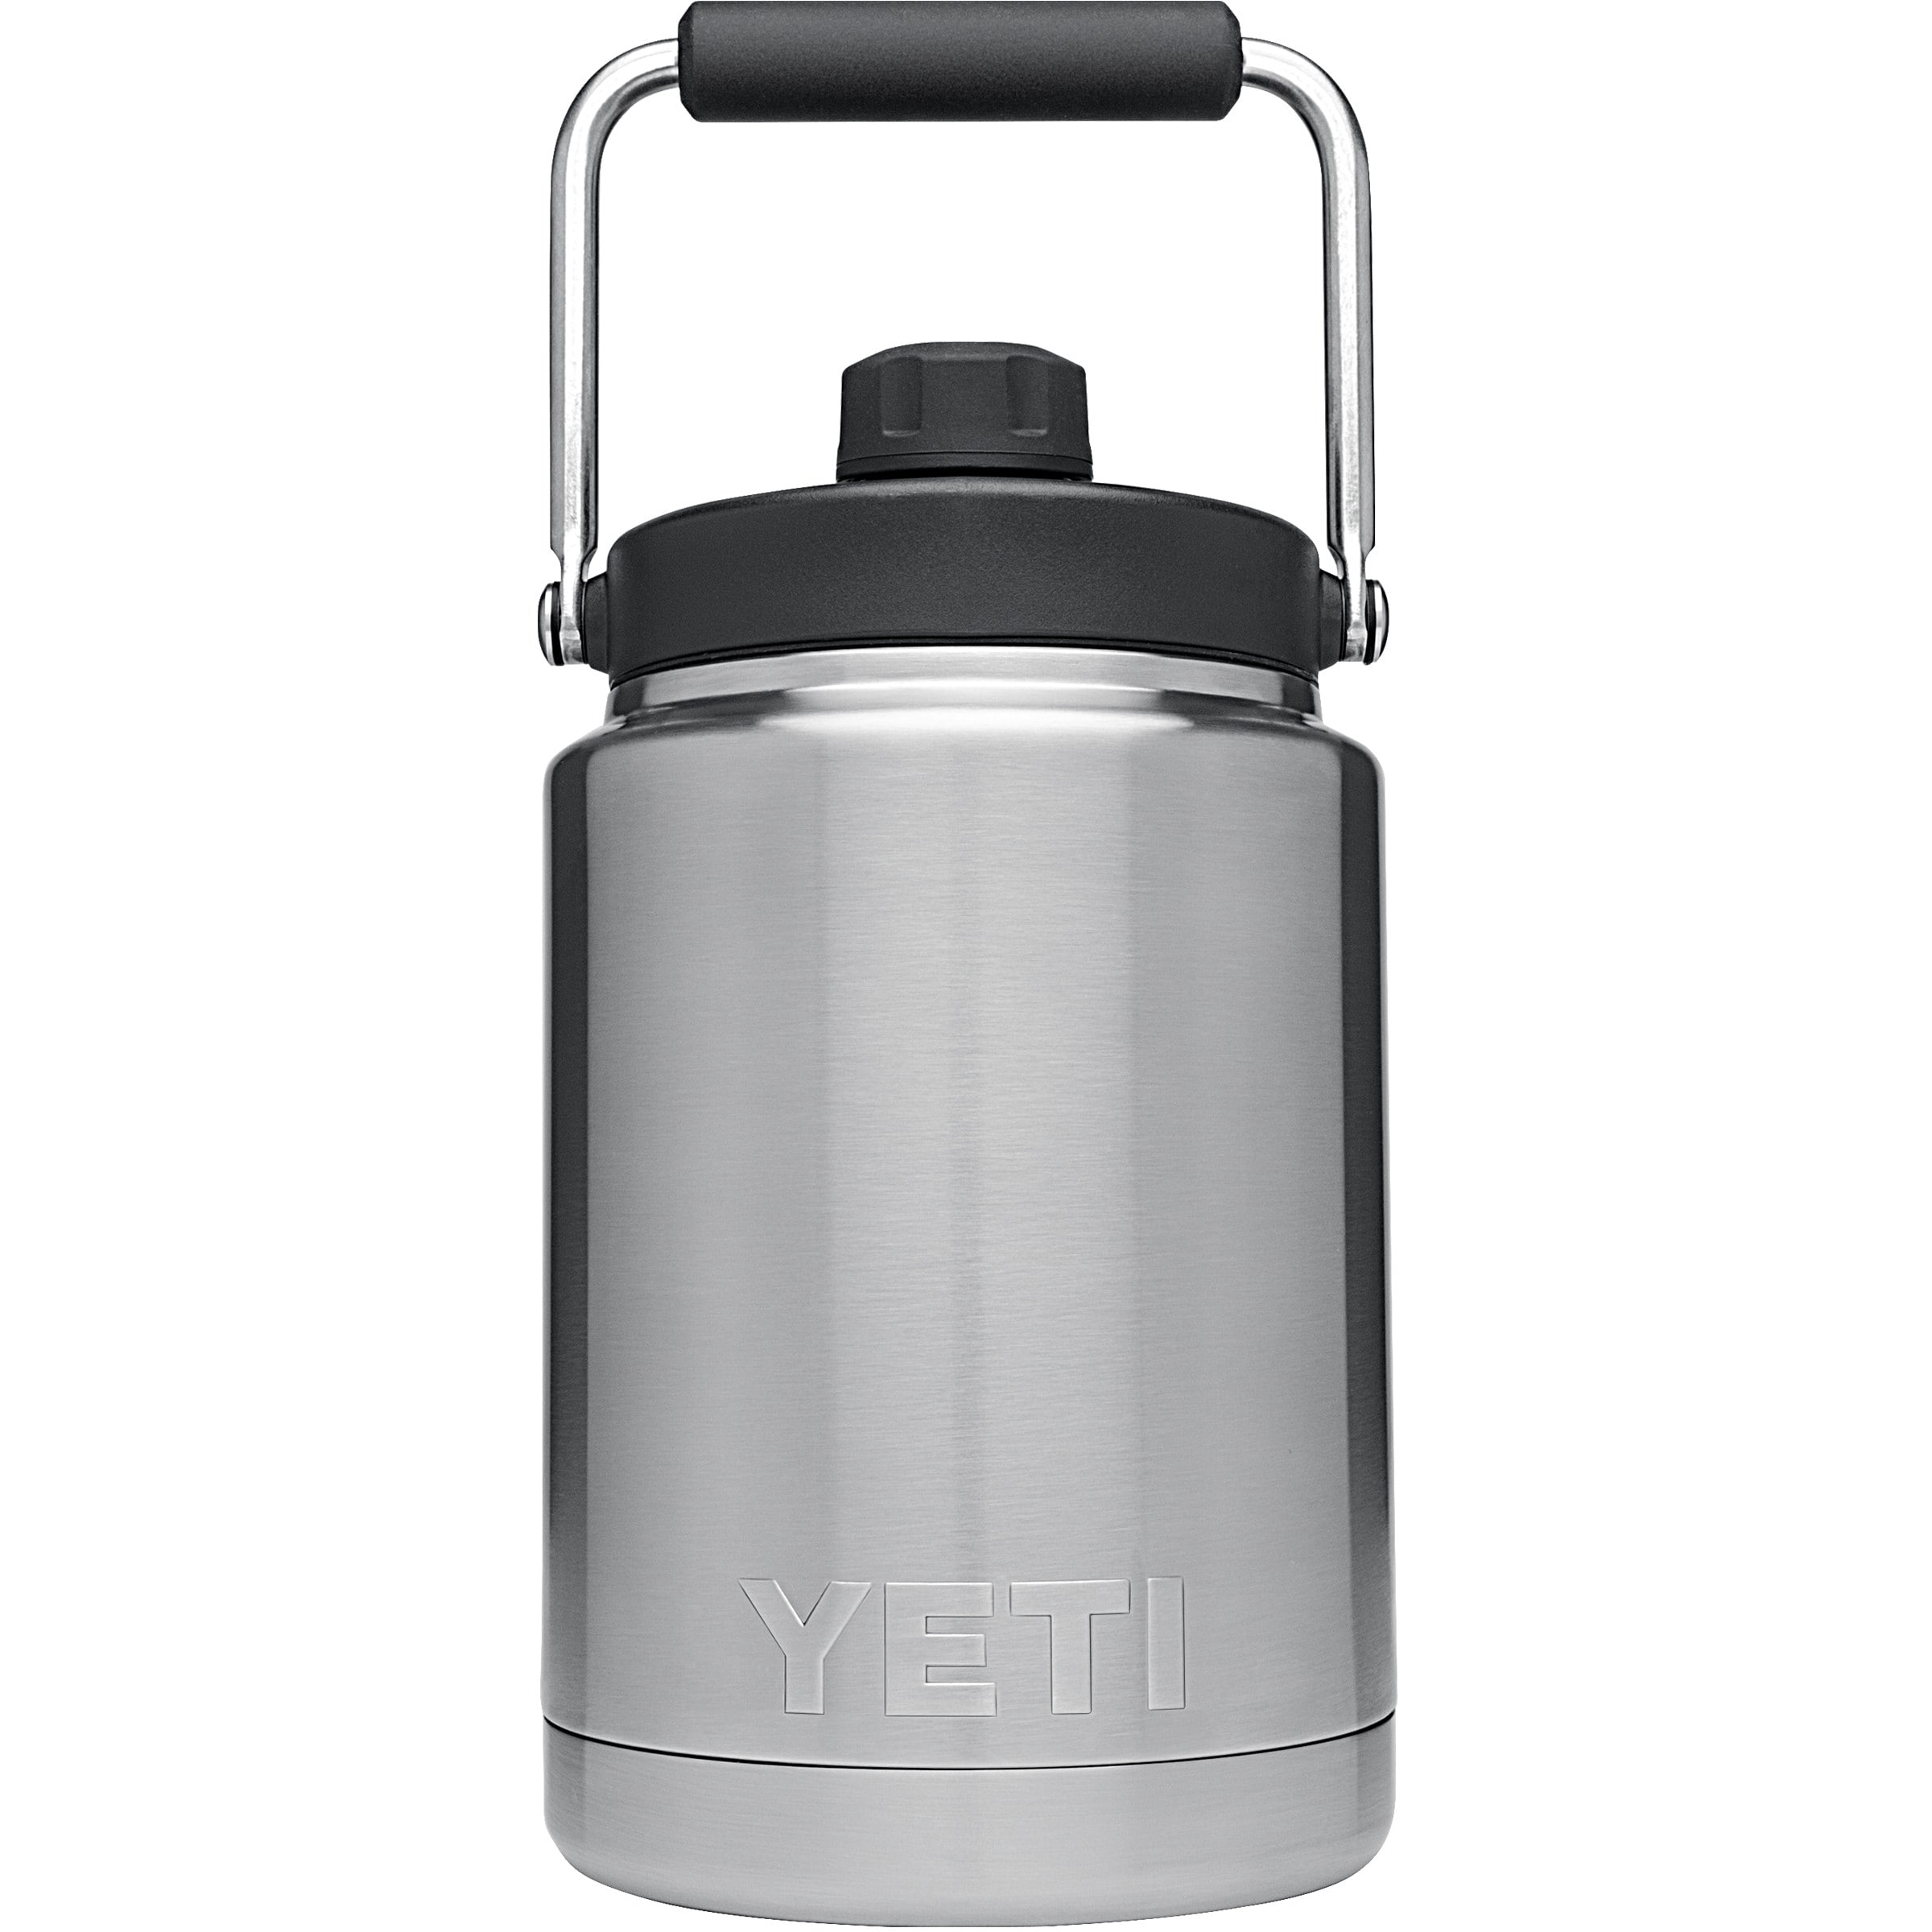 YETI Rambler 64-fl oz Stainless Steel Water Jug at